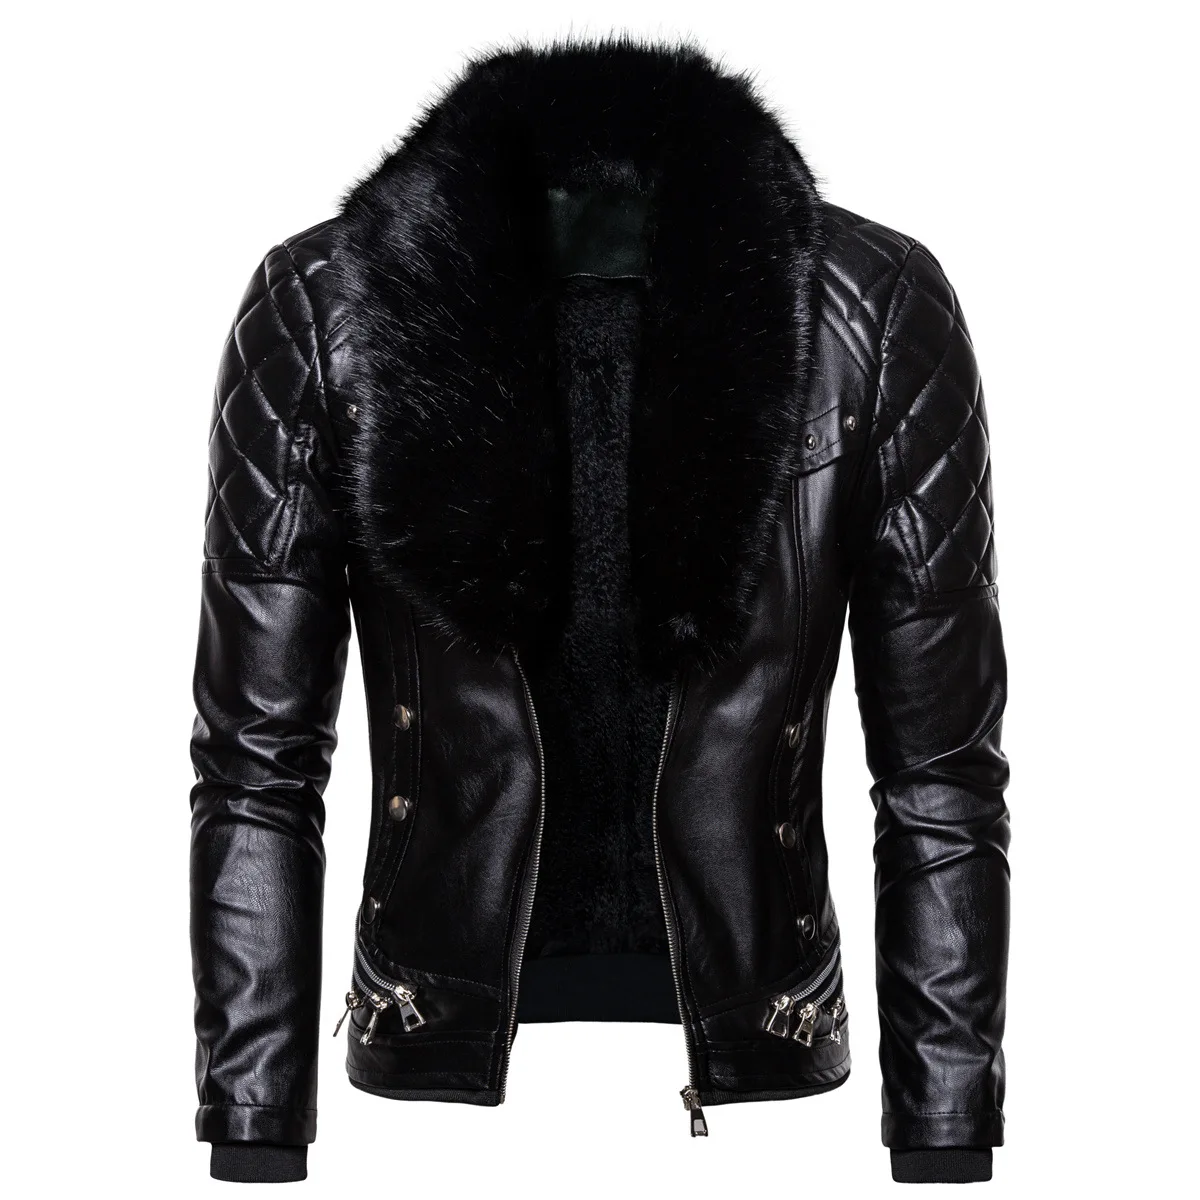 

Мужская зимняя куртка из искусственной кожи, черная теплая куртка оверсайз с воротником из искусственного меха, длинными рукавами и молние...